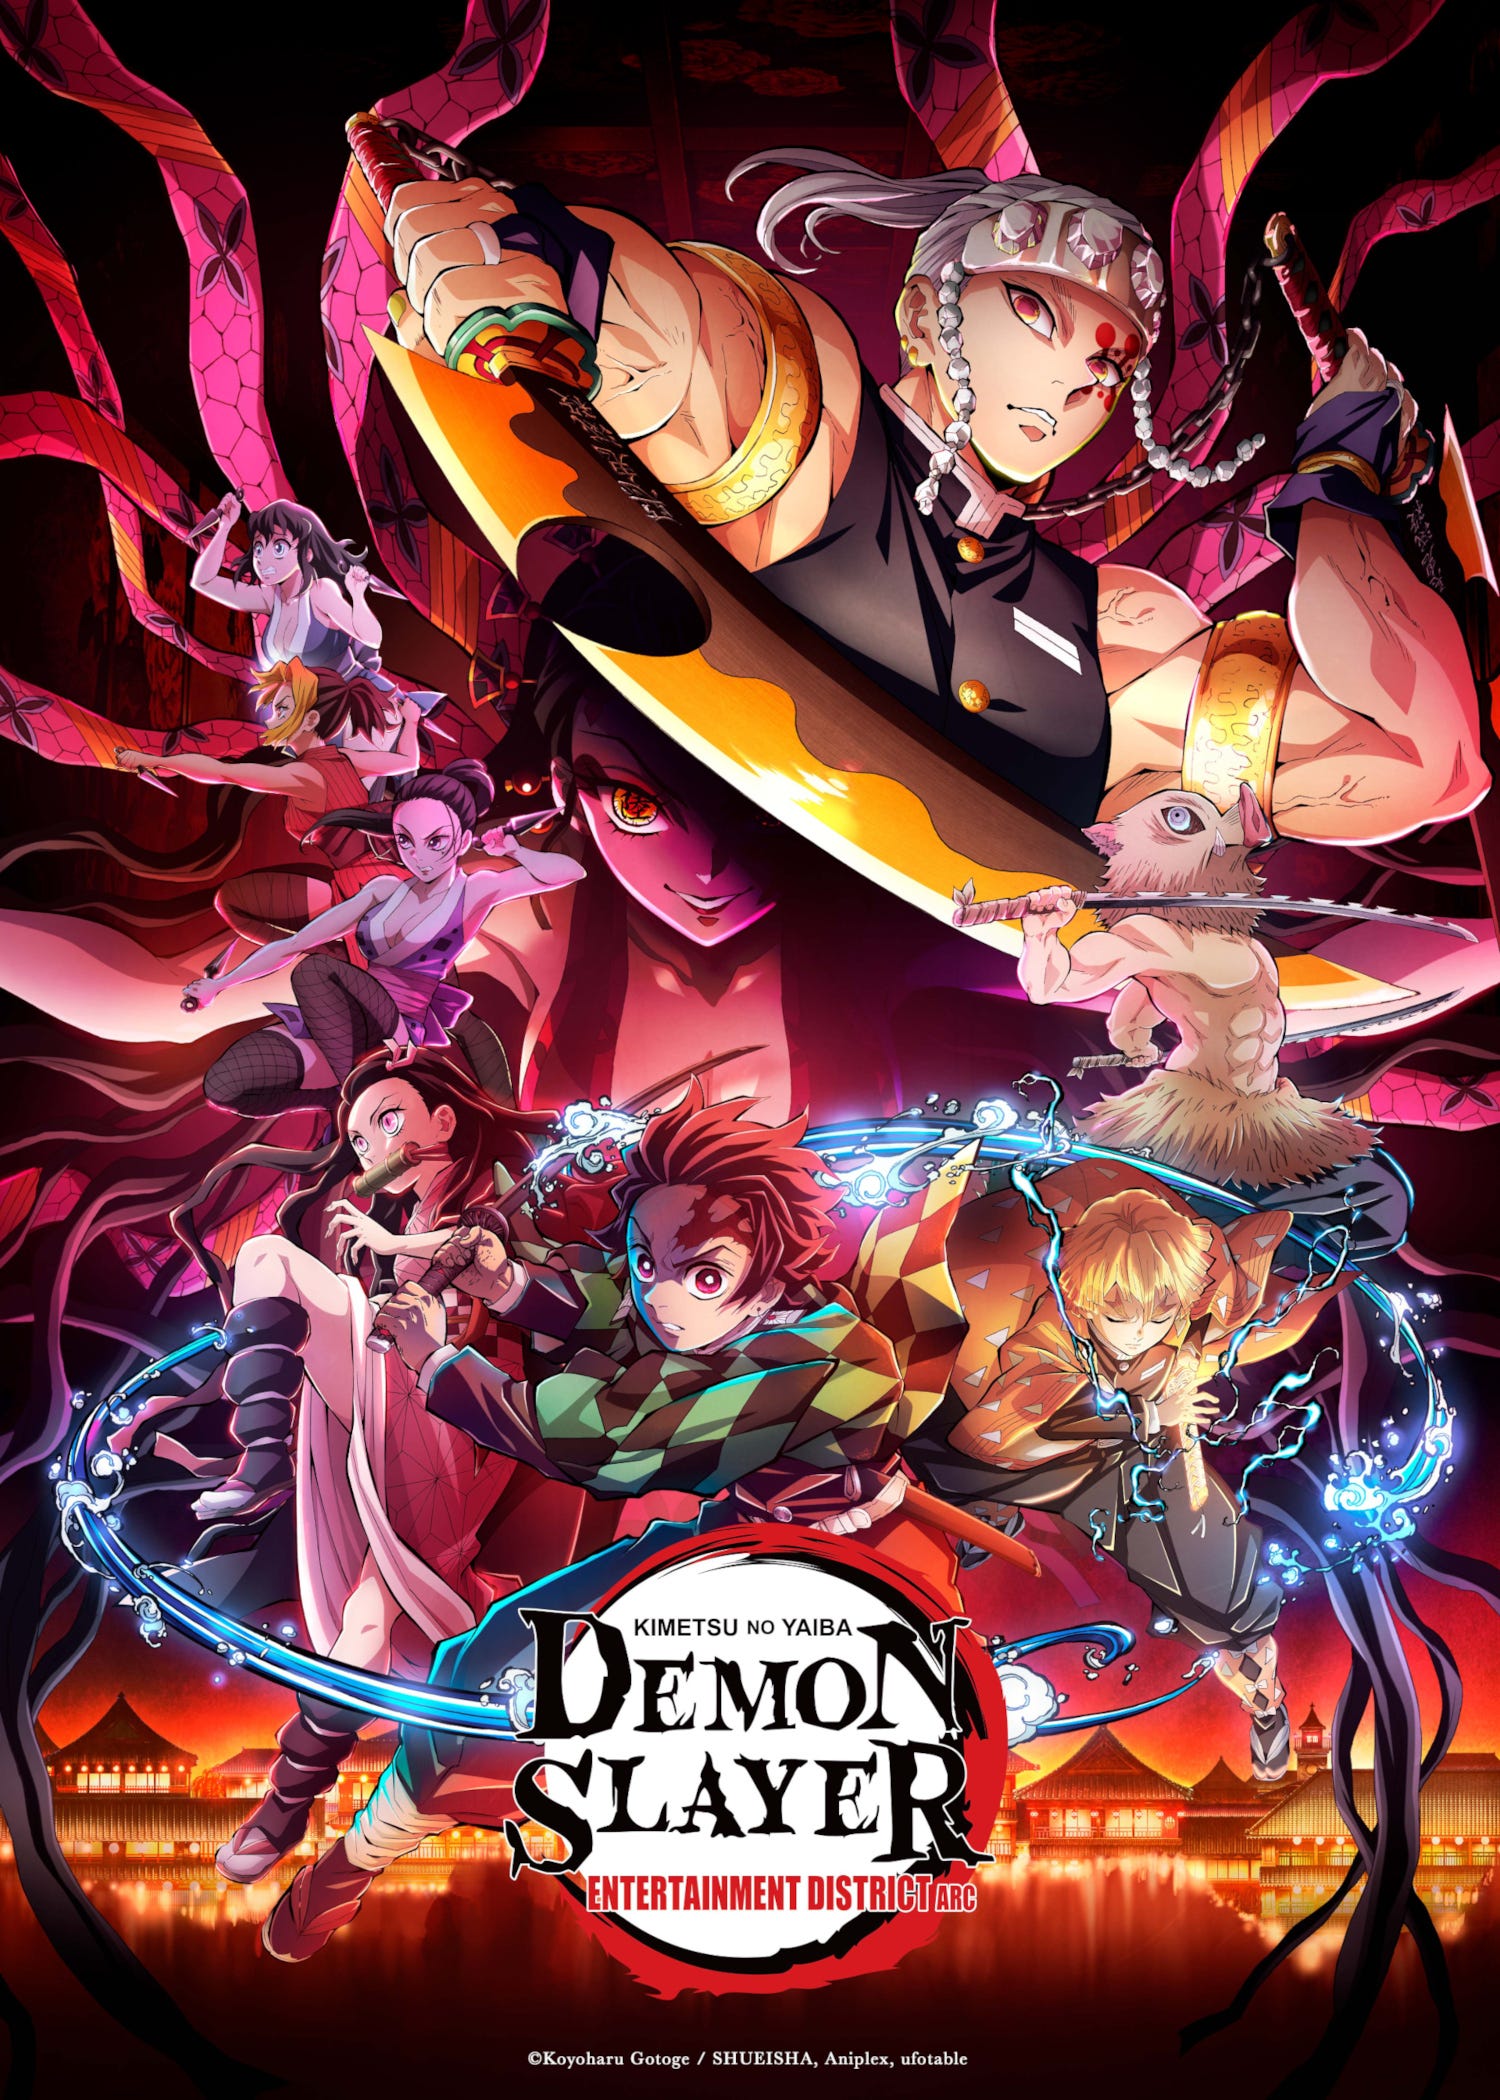 Demon Slayer: Kimetsu No Yaiba Mugen Train Arc Review: More Rengoku